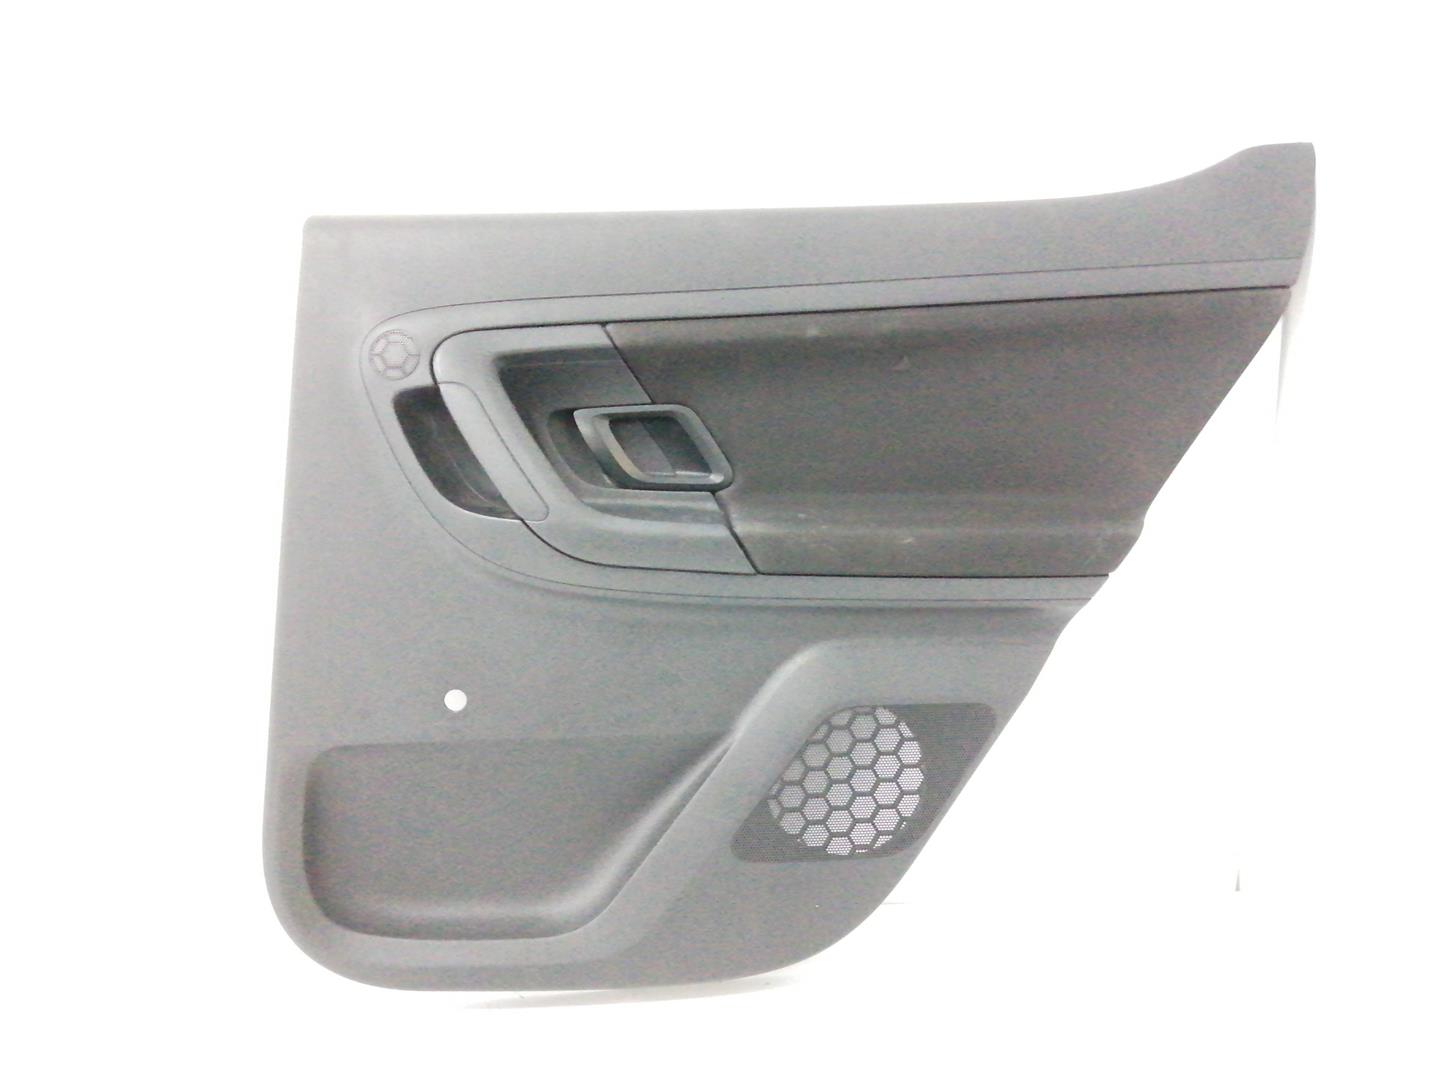 SKODA Fabia 2 generation  (2010-2014) Rear Right Door Panel 5J6867210CN, NEGRO 19338015